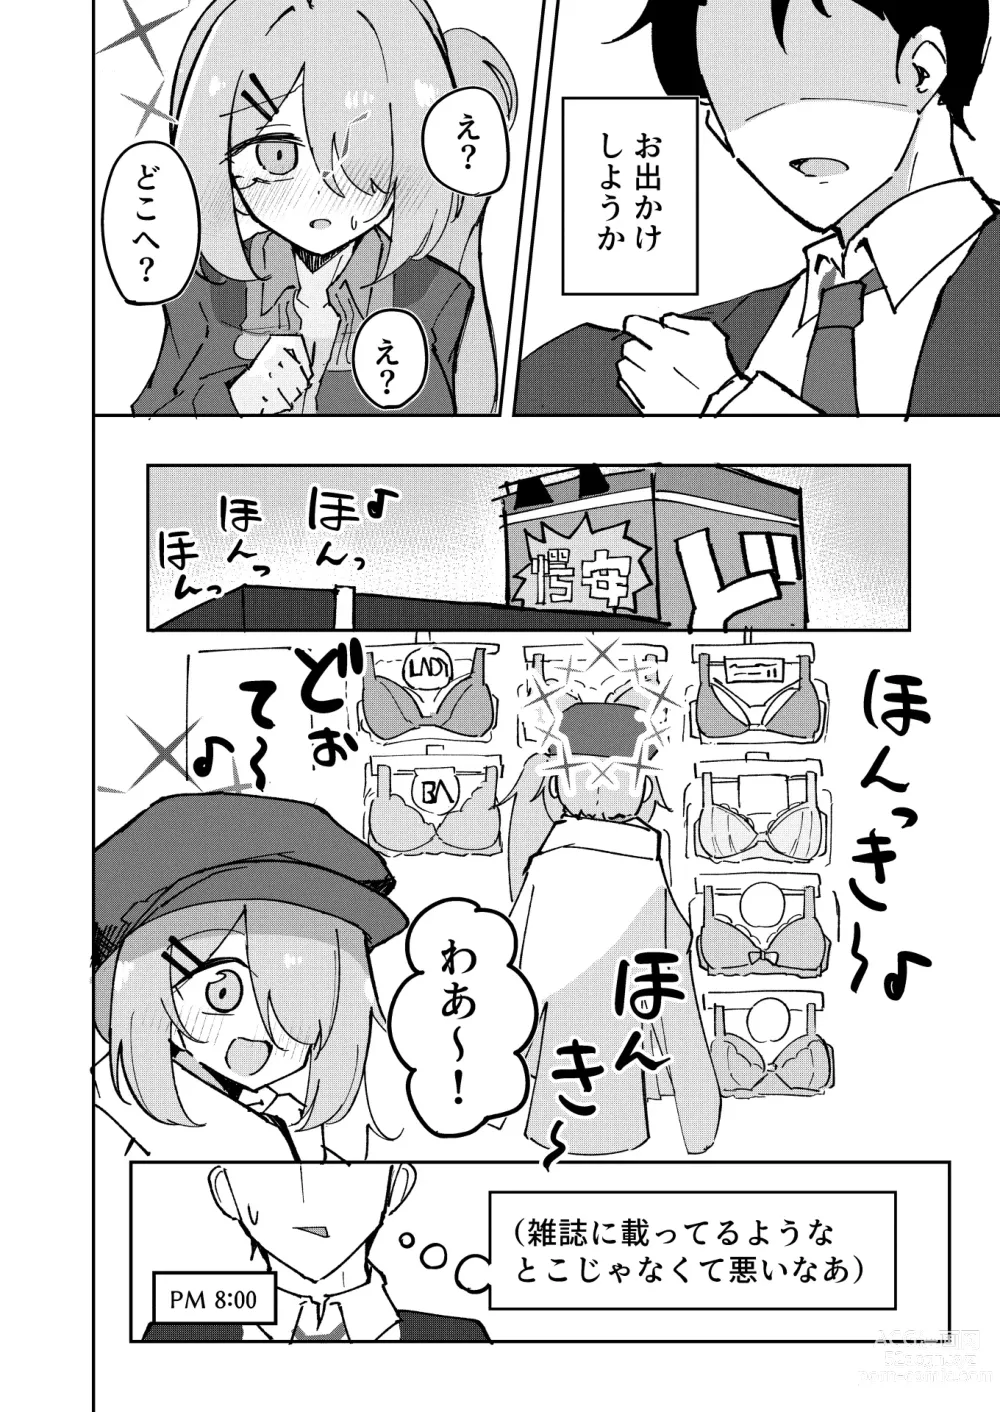 Page 6 of doujinshi Sensei to Seito wa Mou Owari